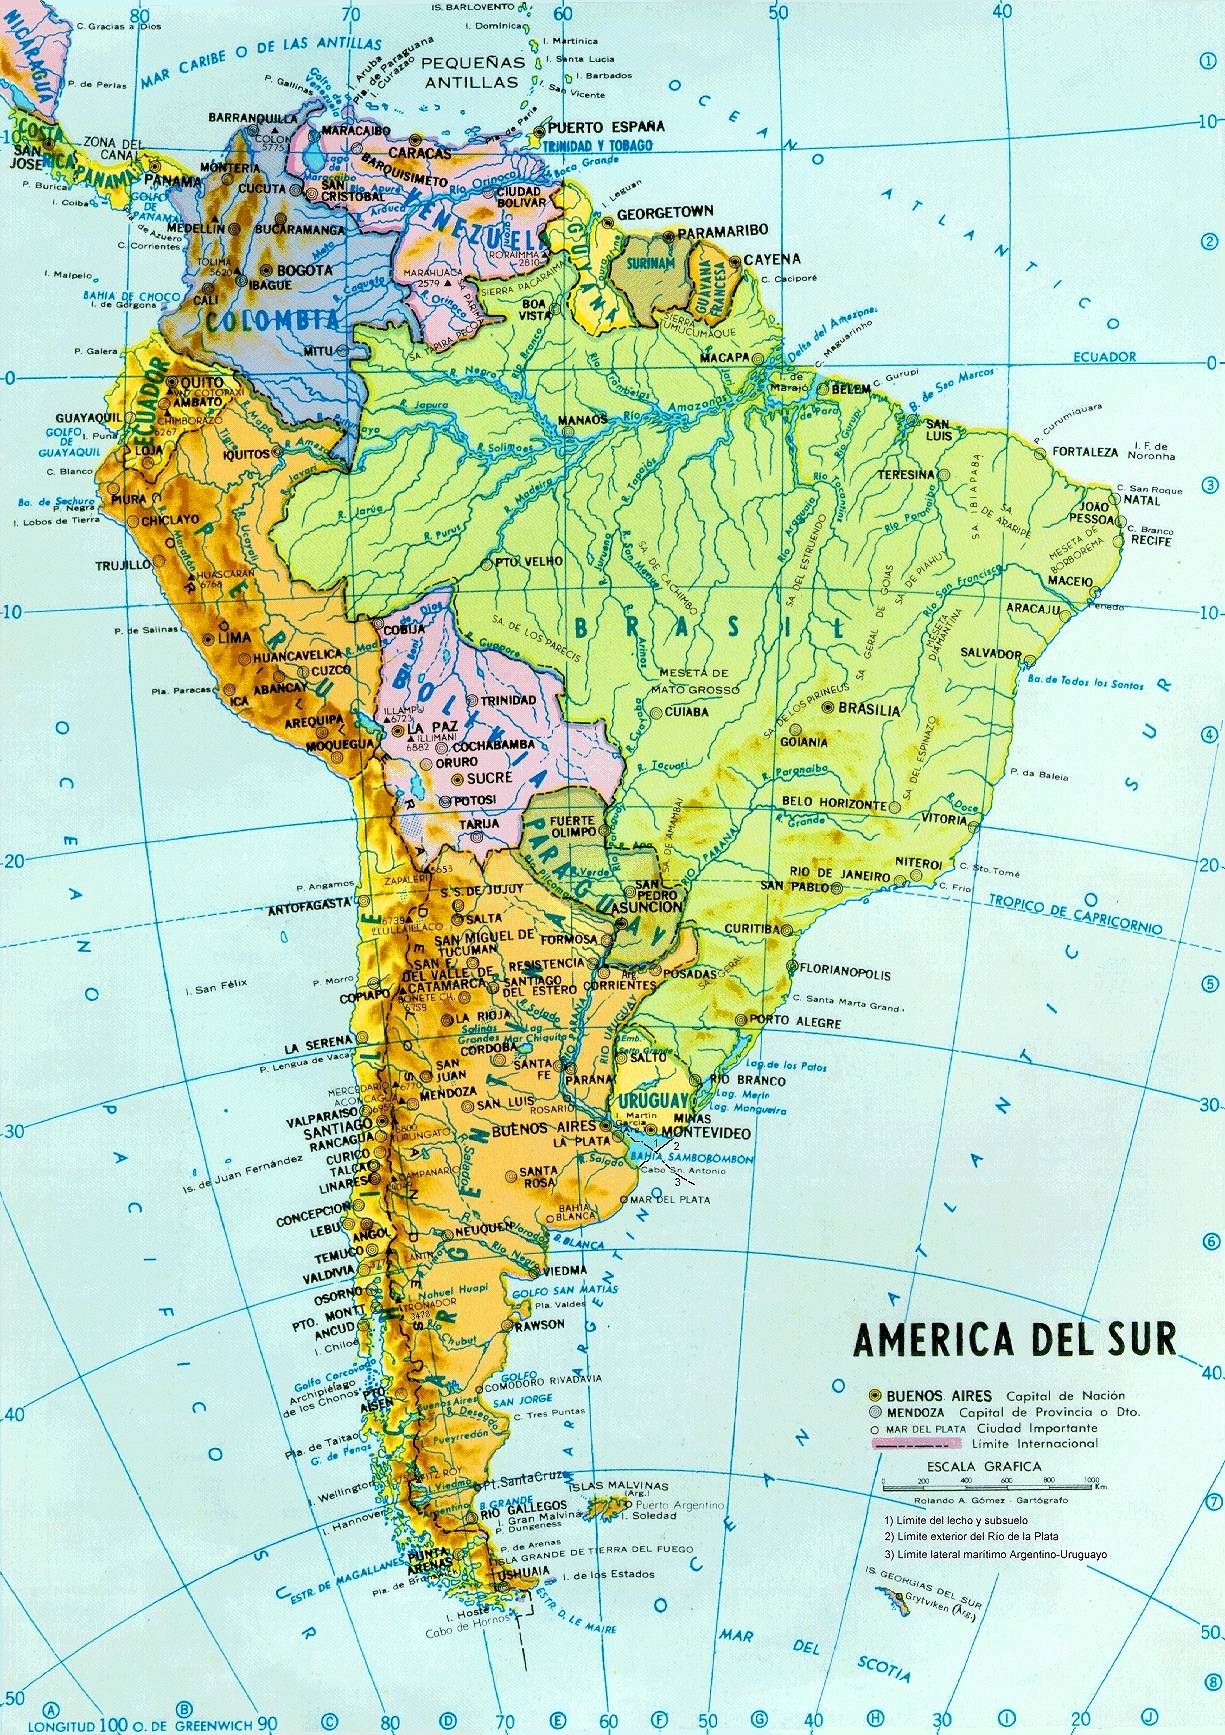 Mapa Político y hidrográfico de América del Sur - Tamaño completo